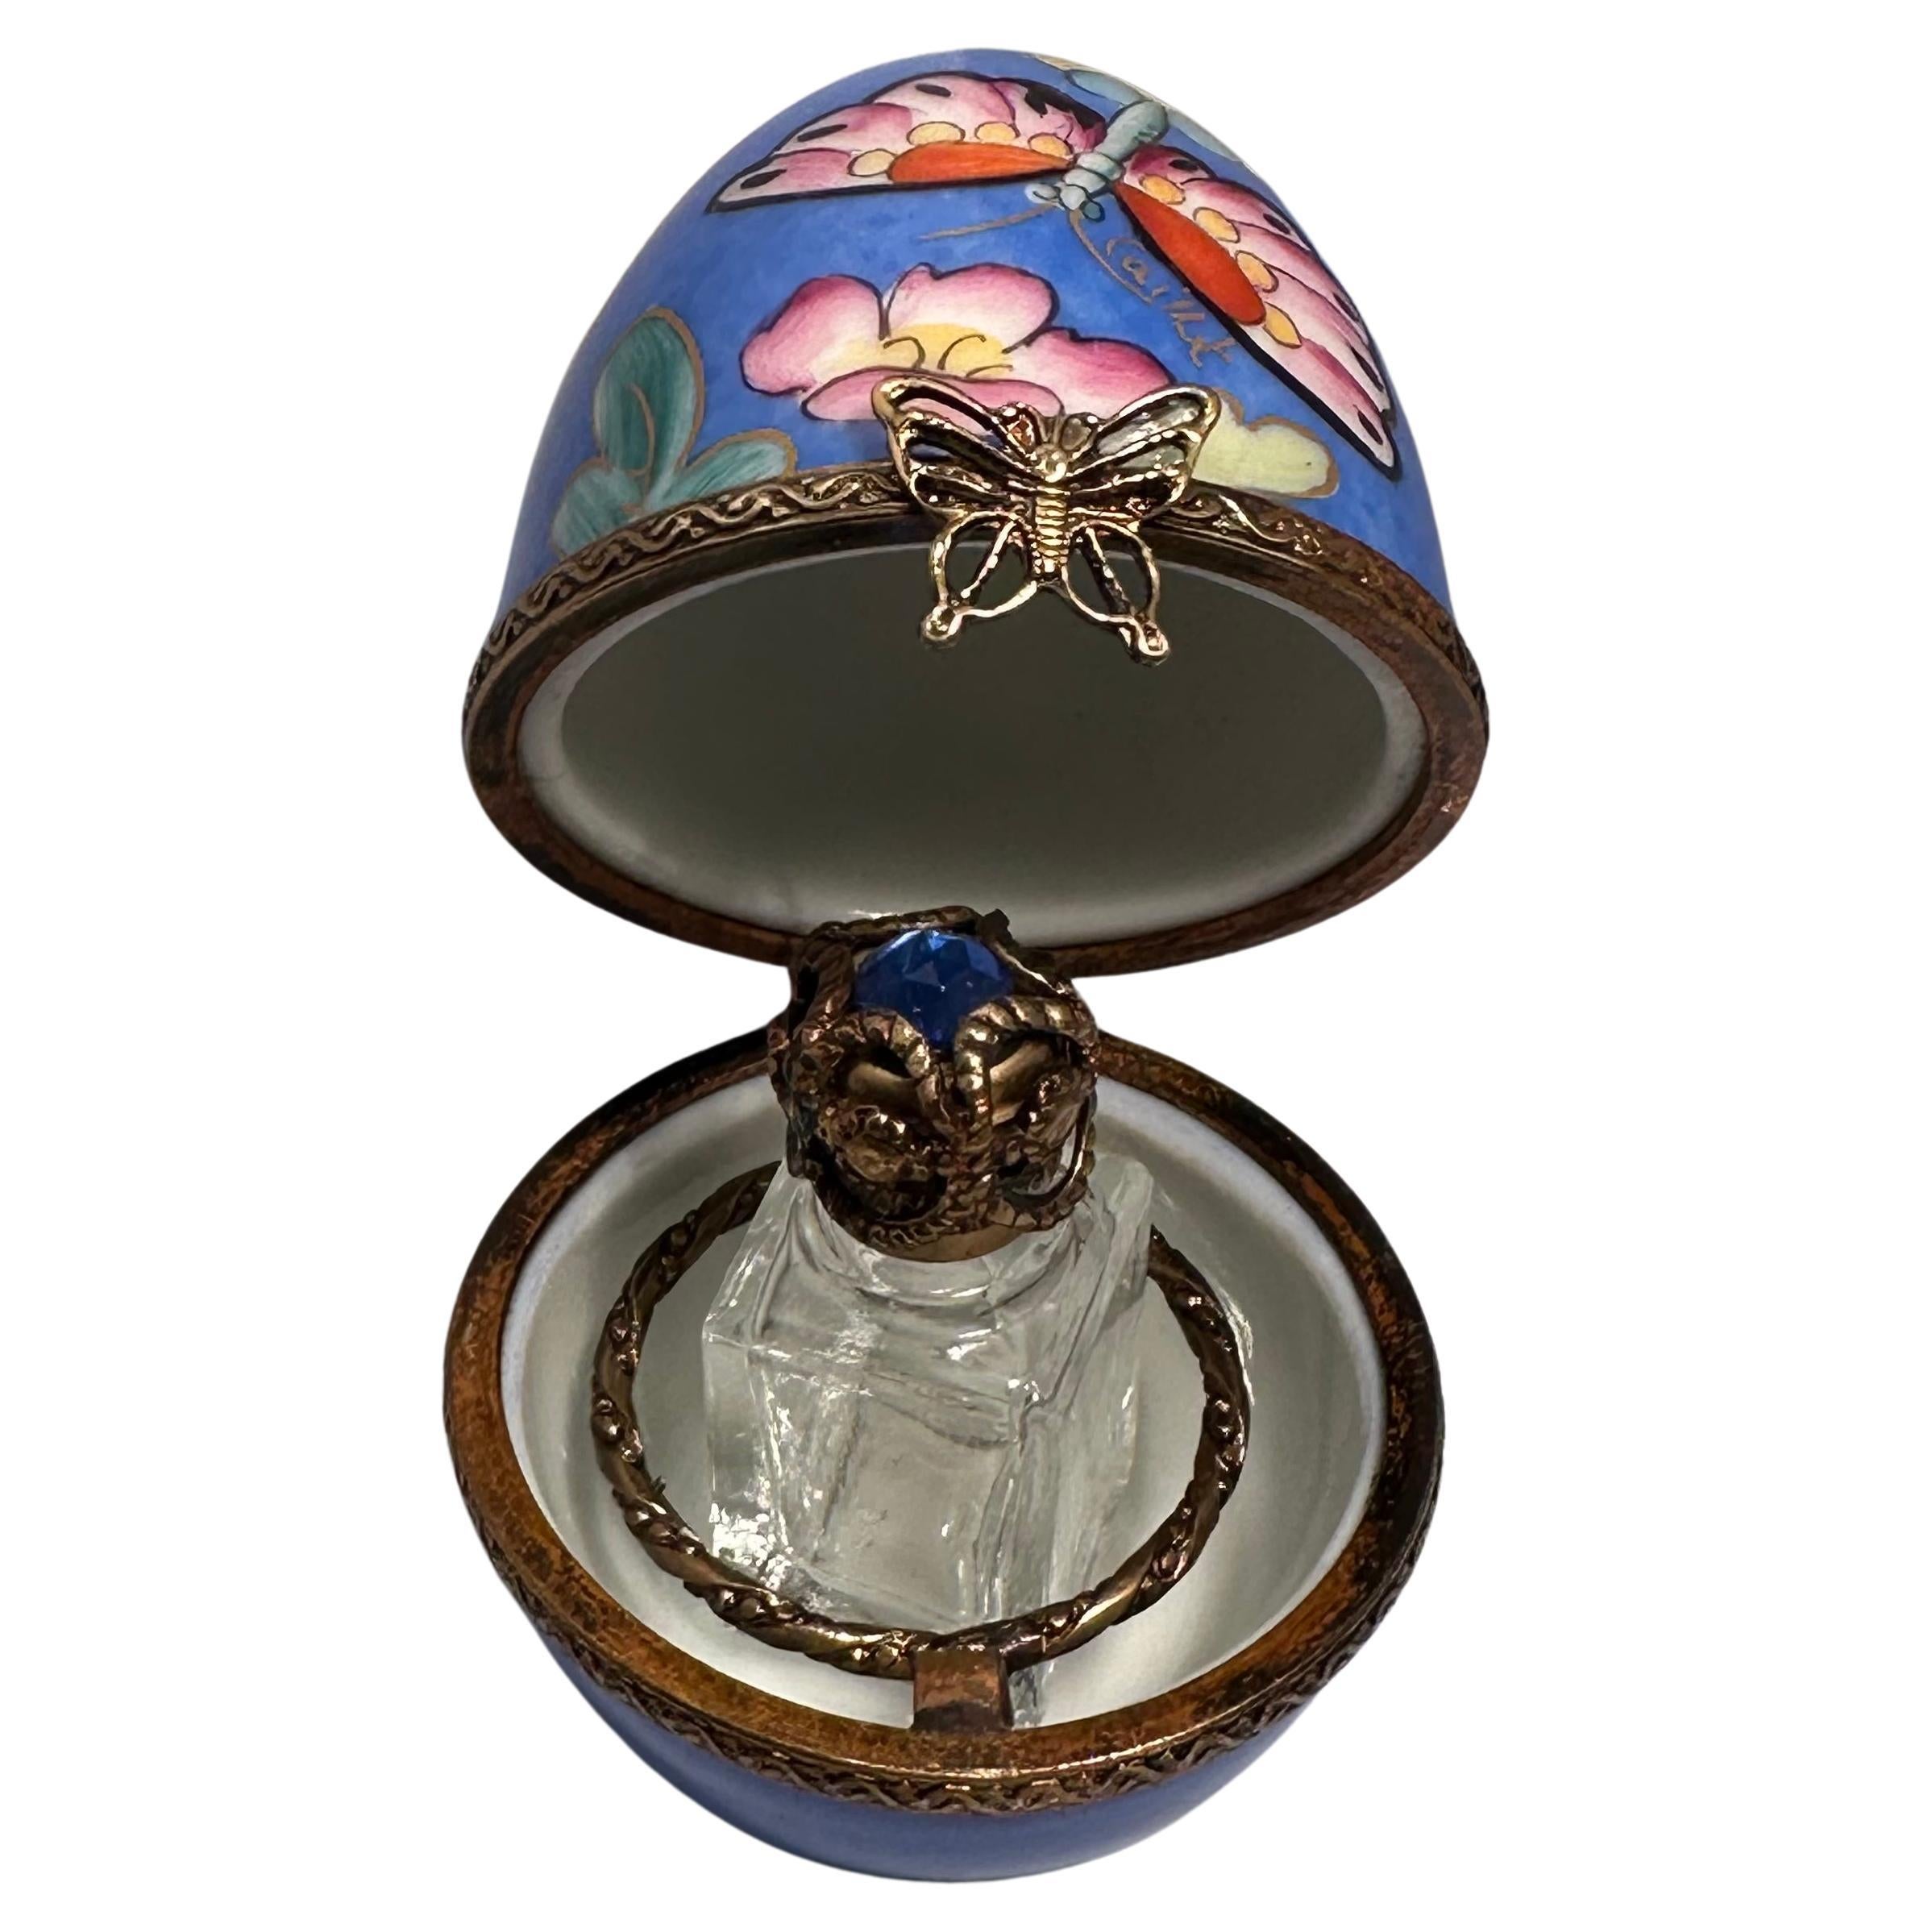 Boîte à parfum miniature en porcelaine de Limoges, faite et peinte à la main, en forme d'œuf, avec un couvercle à charnière, décorée de jolies fleurs polychromes et d'un motif de papillons sur un fond bleu apaisant. La boîte et le couvercle en